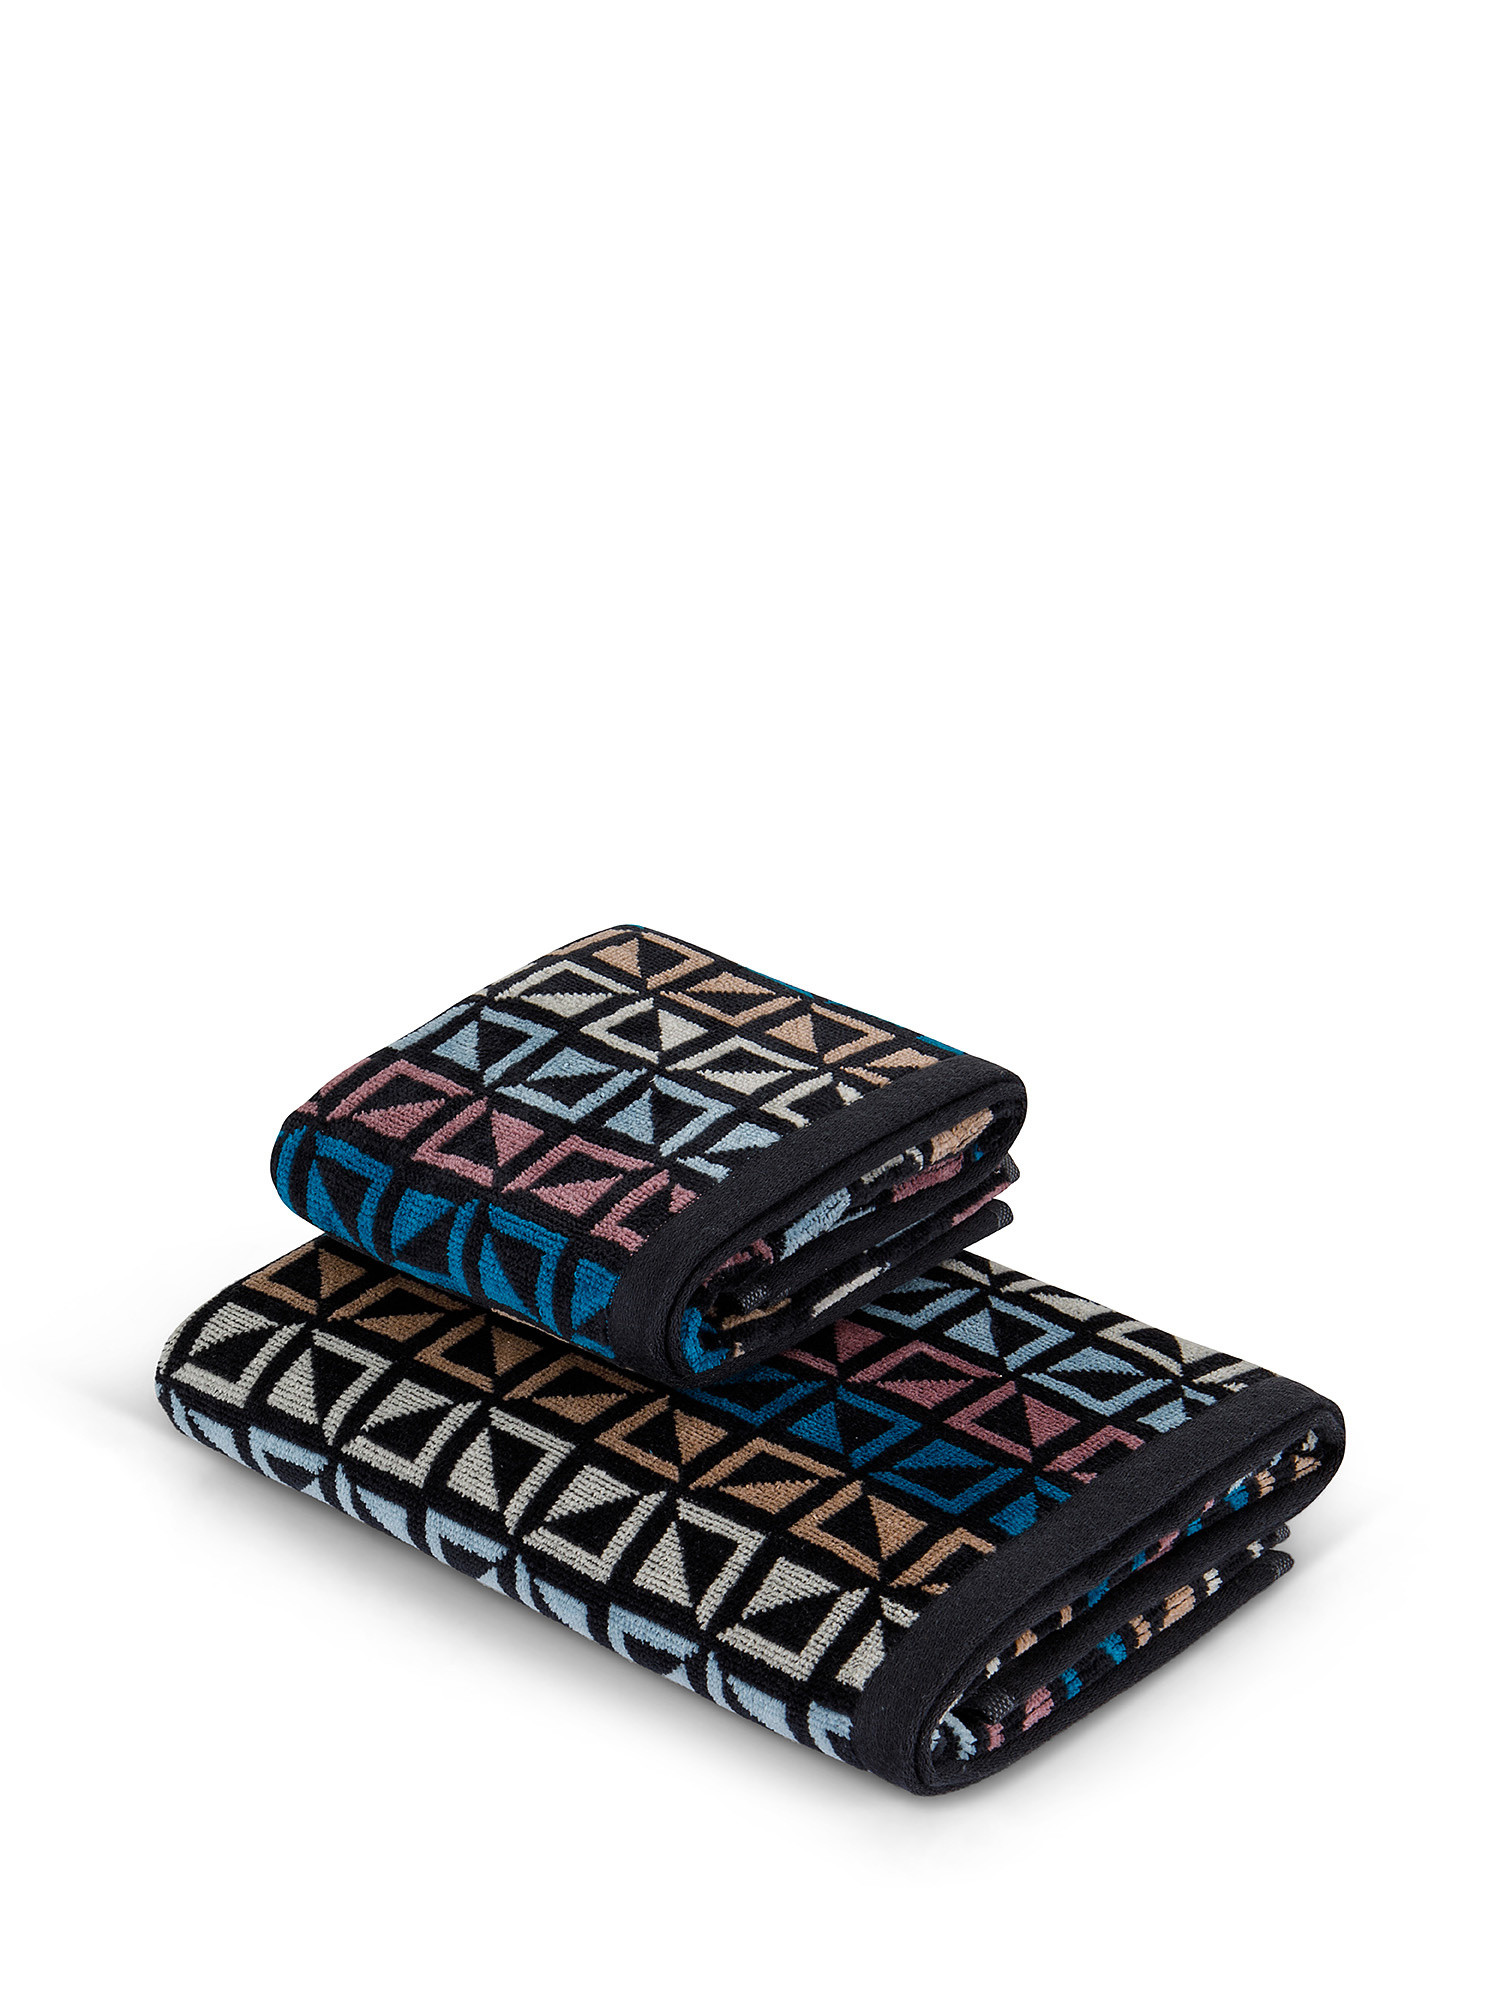 Asciugamano cotone velour motivo geometrico, Multicolor, large